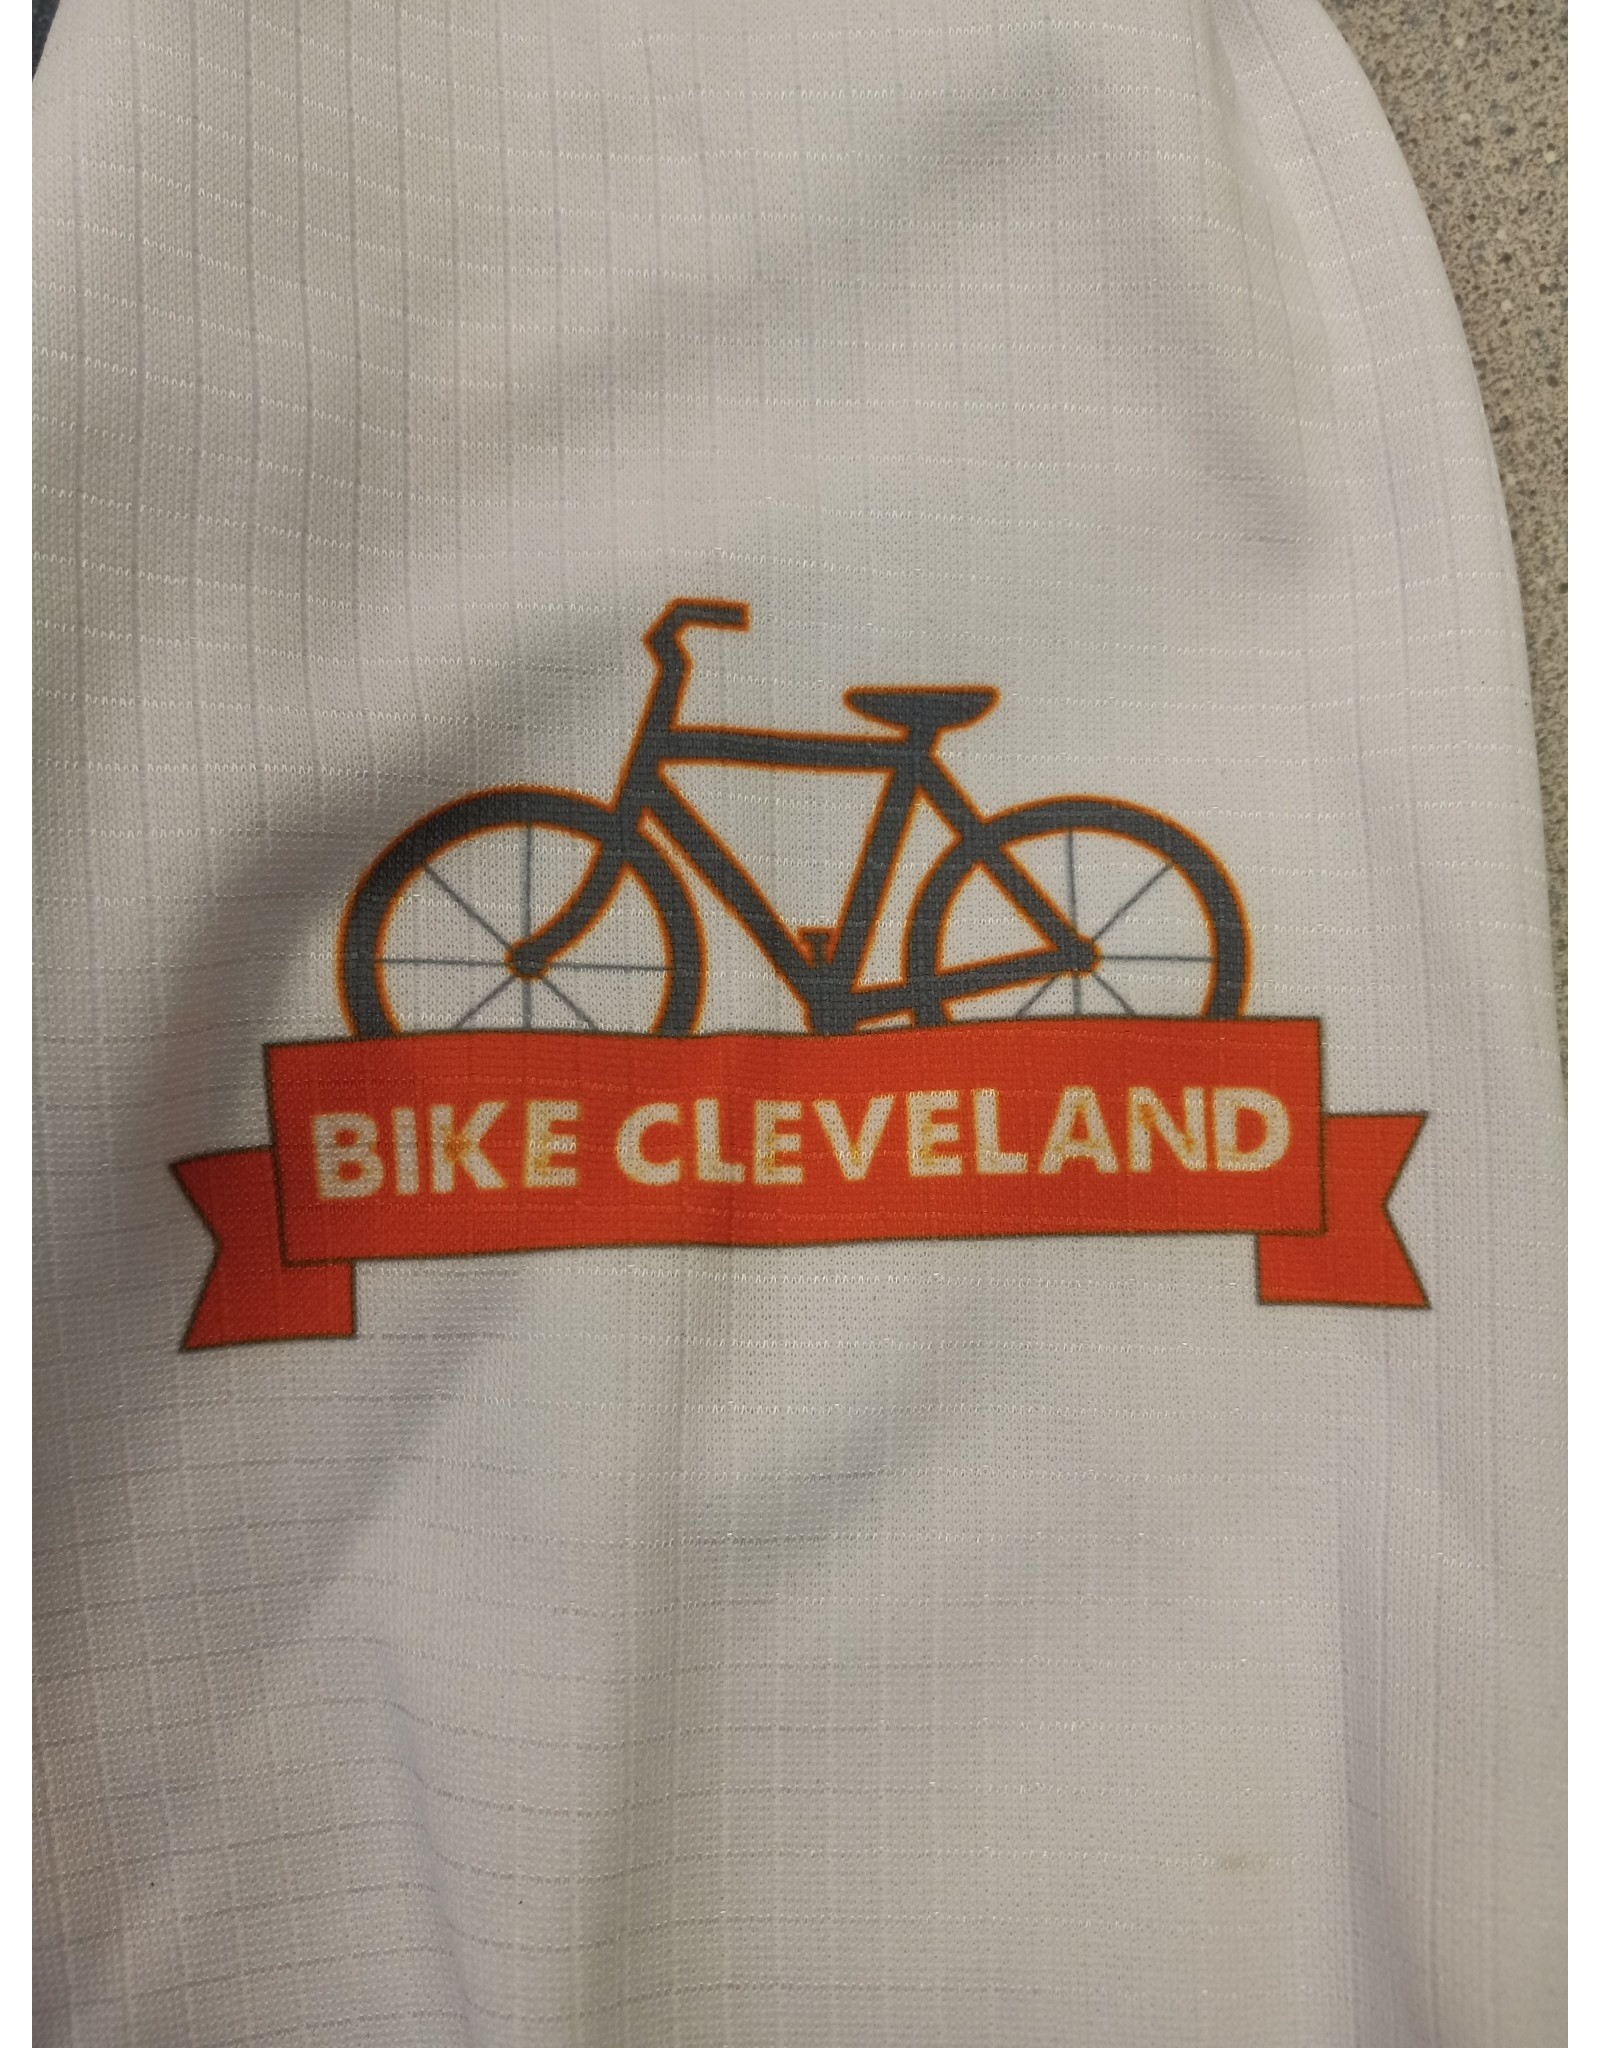 Bike Cleveland Jersey, size XS